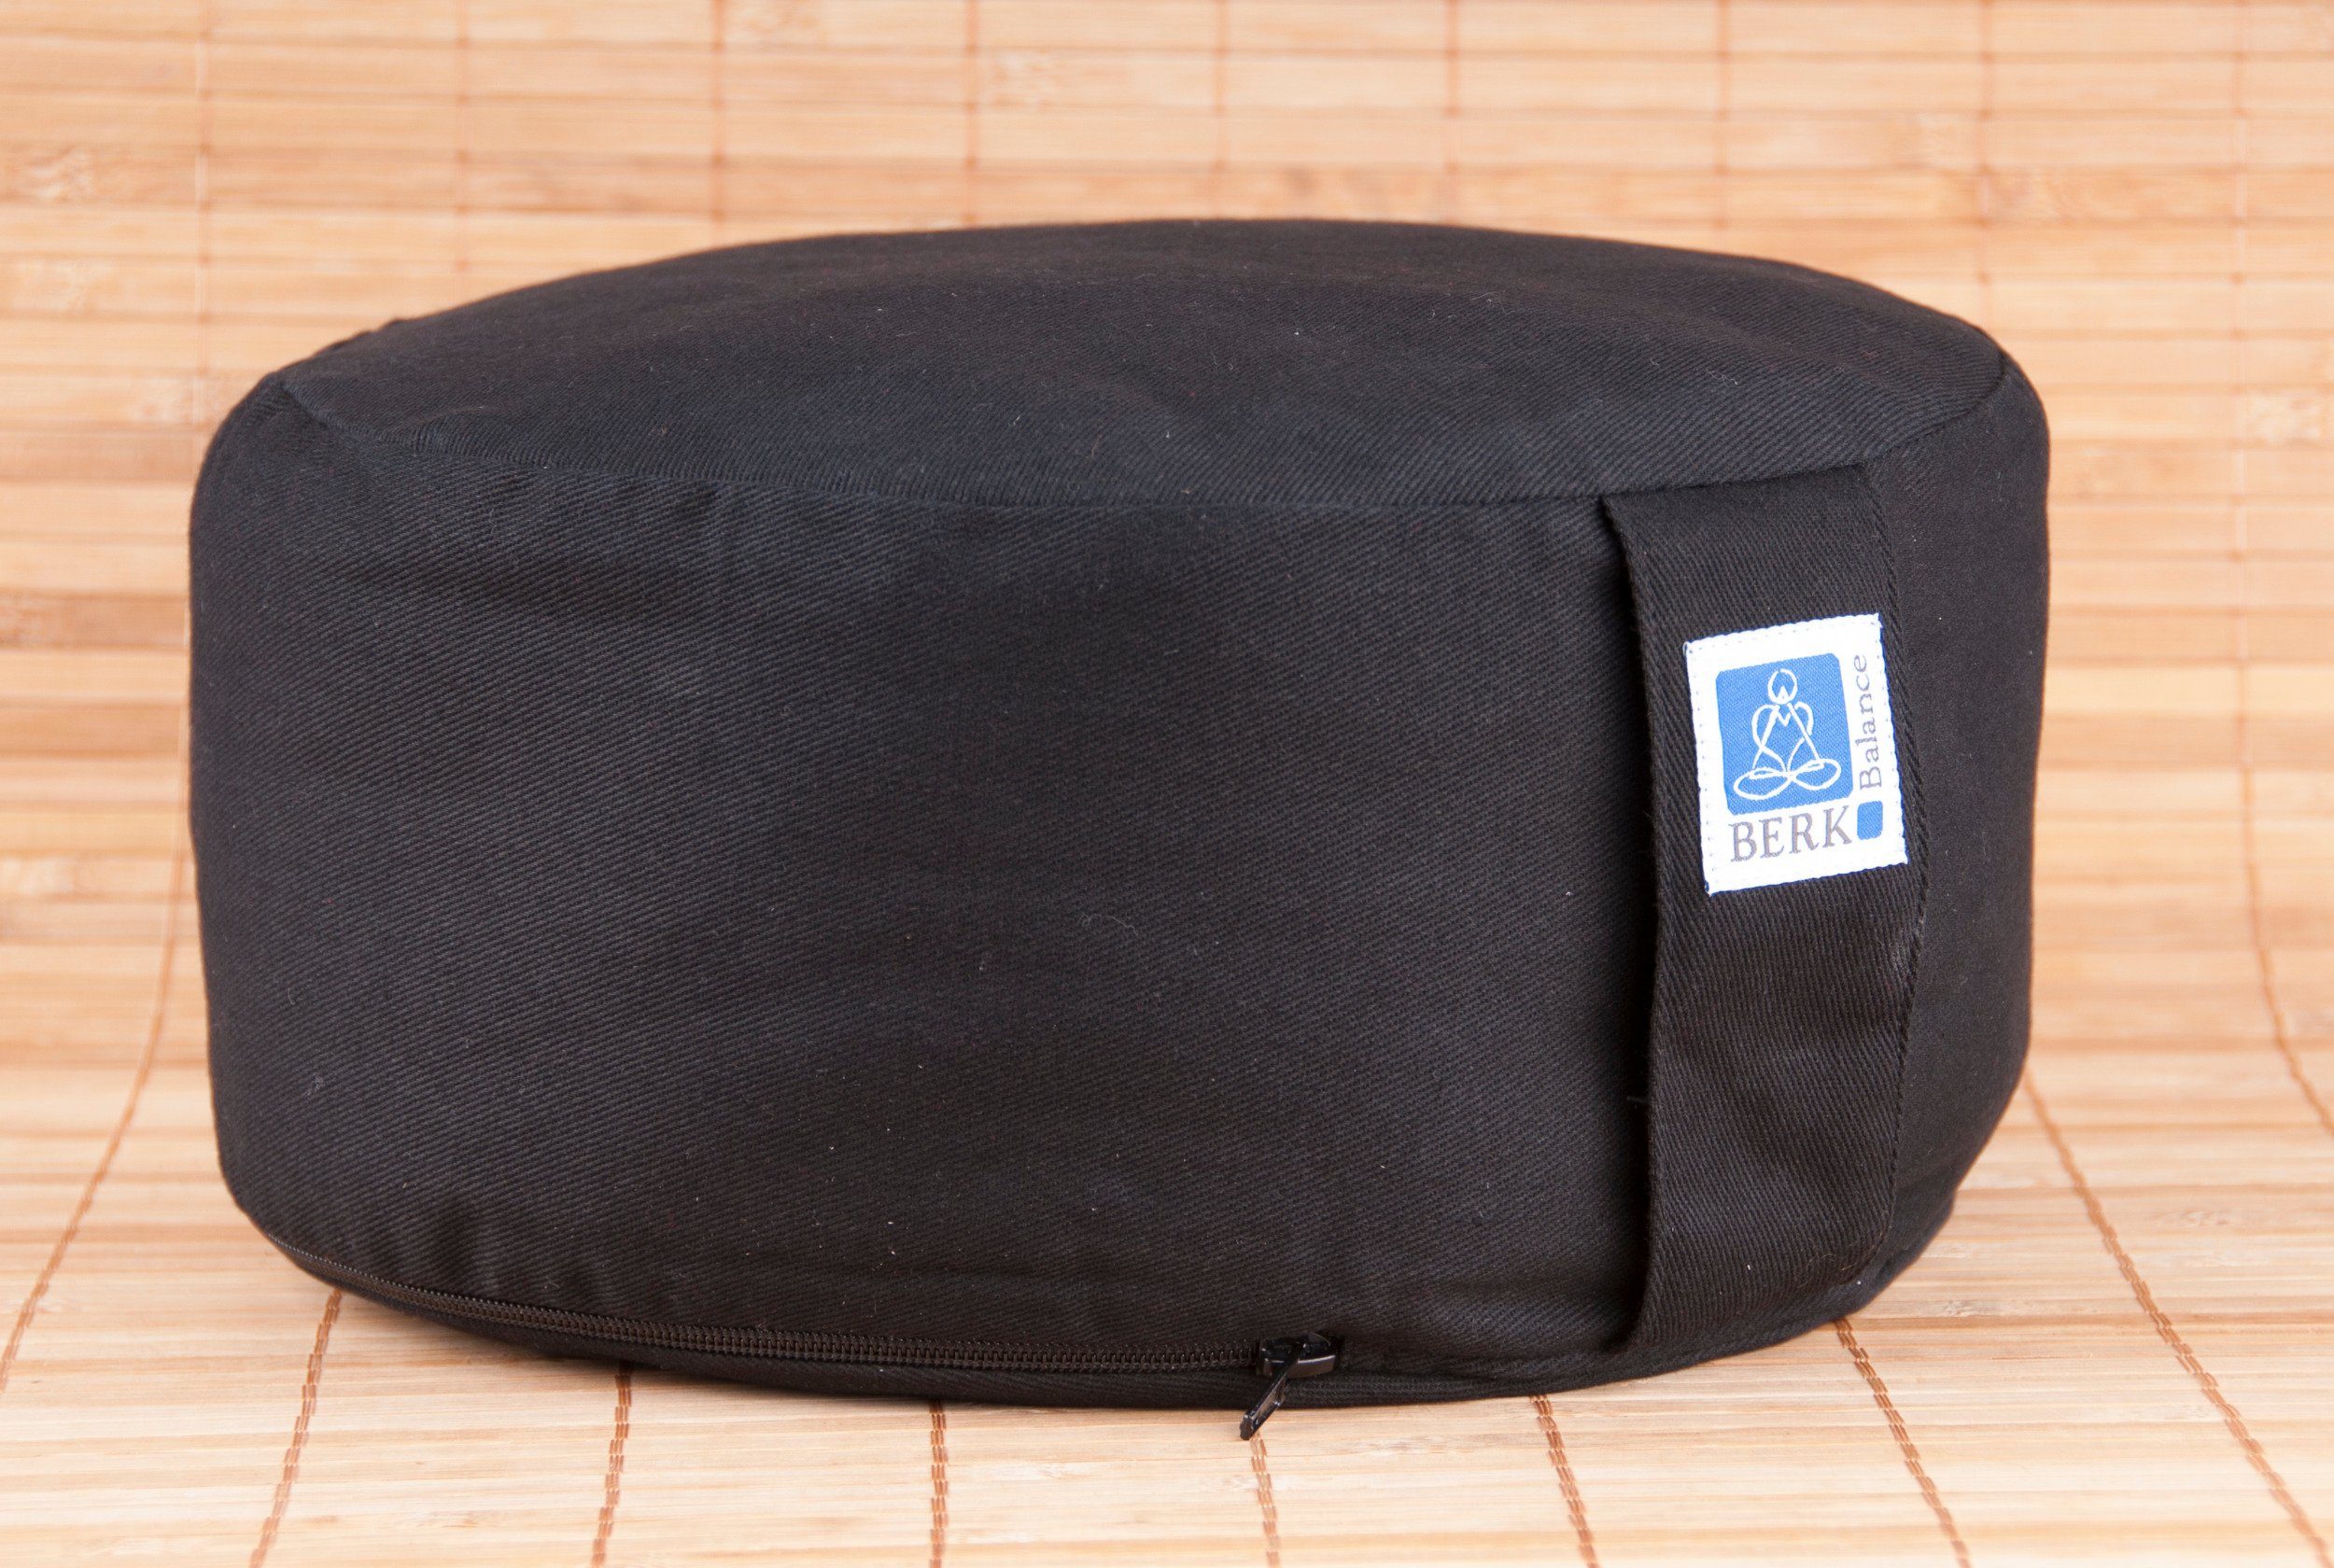 Berk Meditationskissen Zen Kissen, schwarz mit Kapok gefüllt 30 x 15 cm